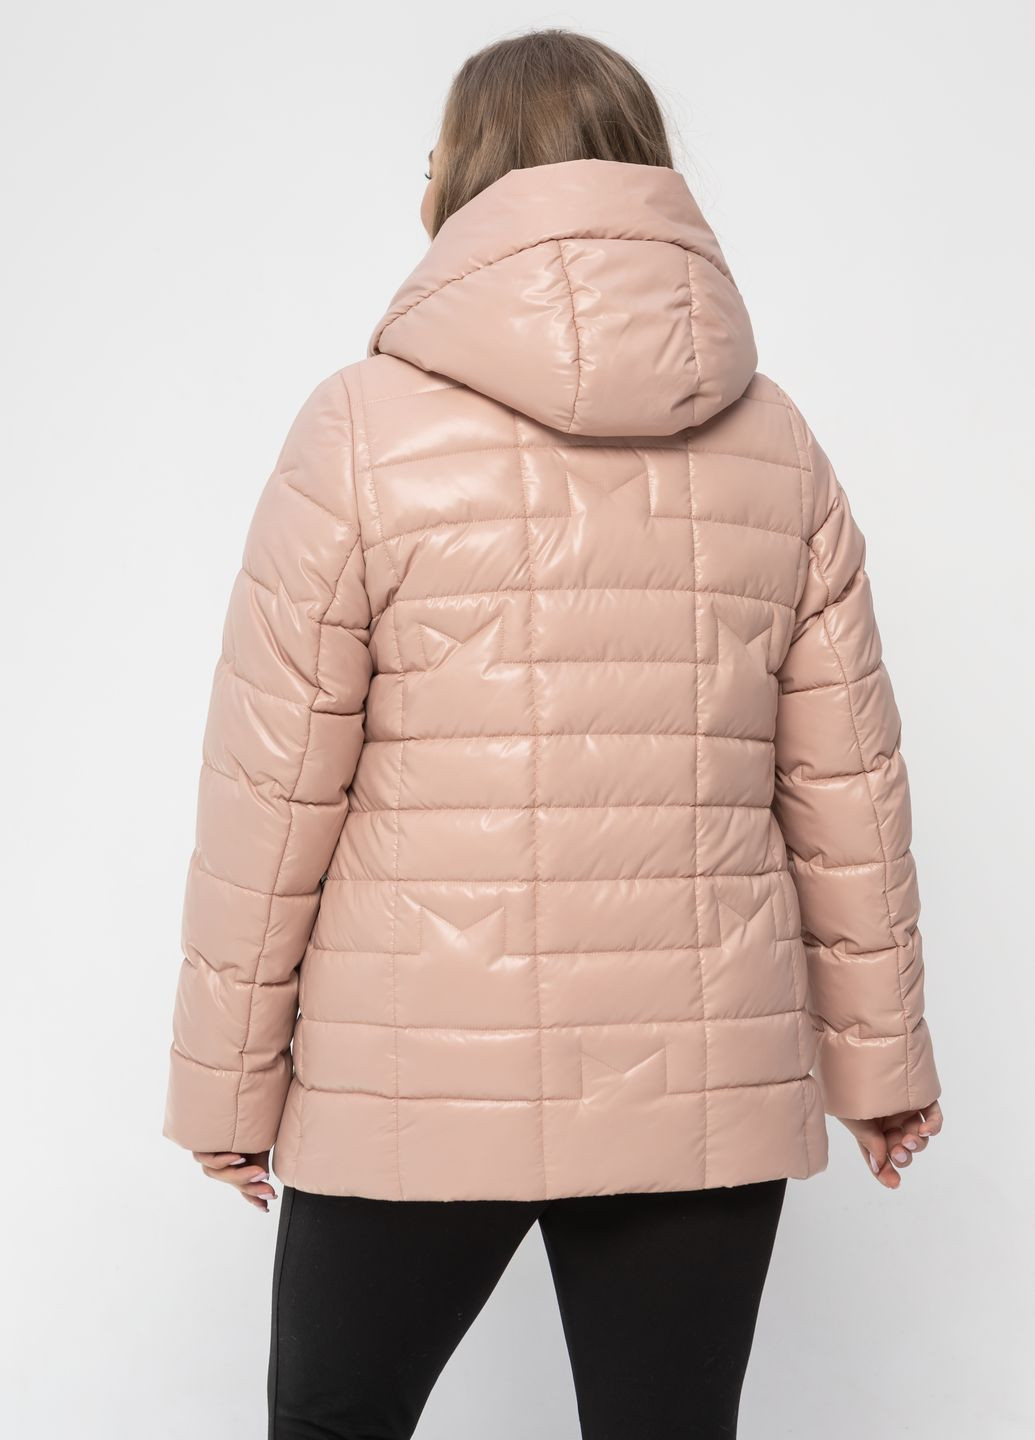 Пудровая демисезонная весенняя женская куртка большого размера куртка-пиджак SK